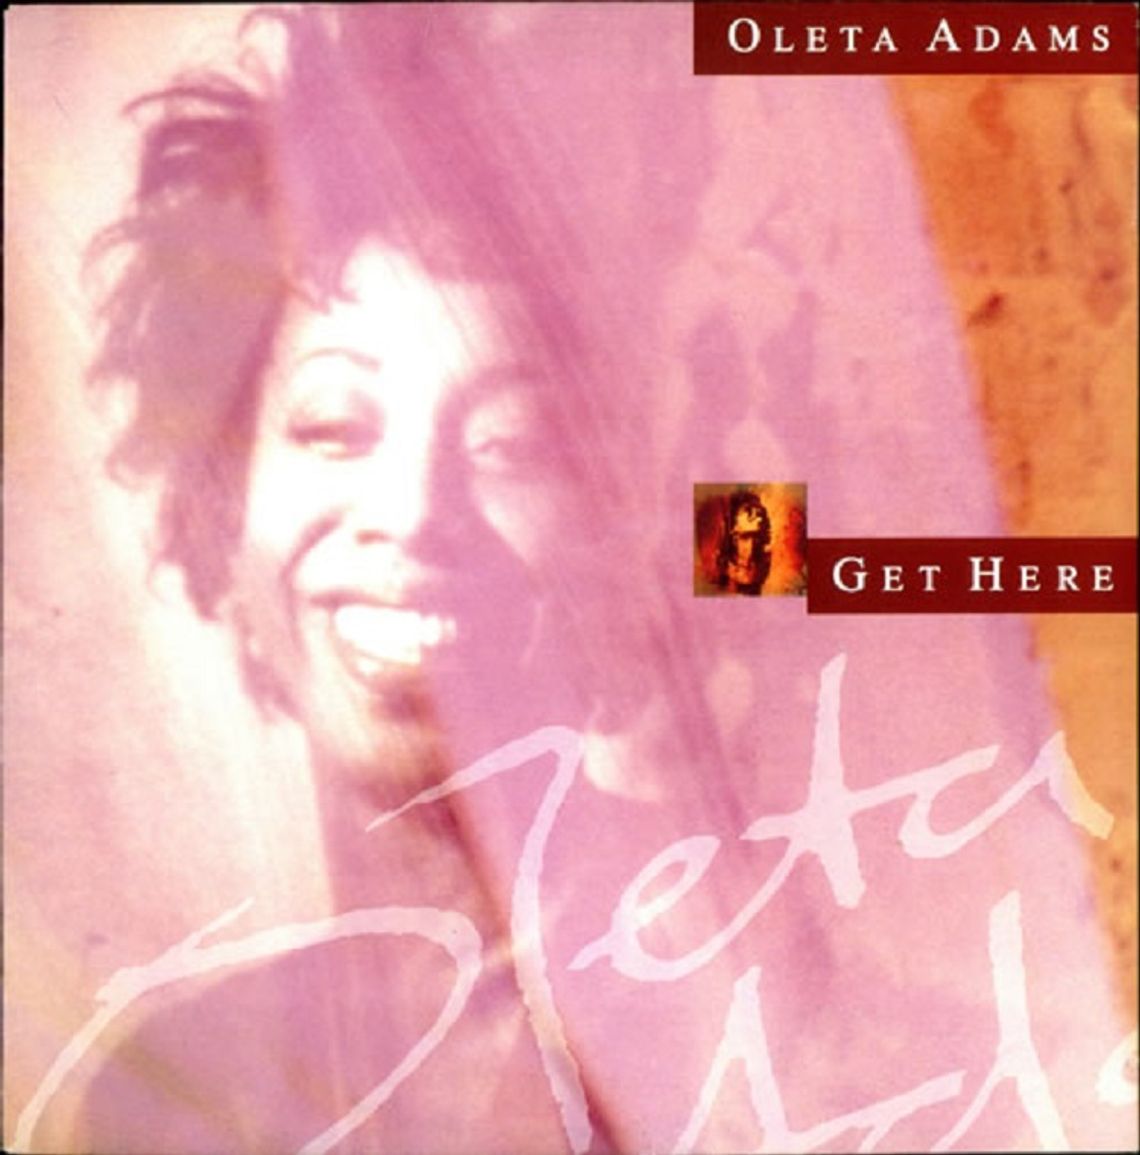 OLETA ADAMS "Get here"